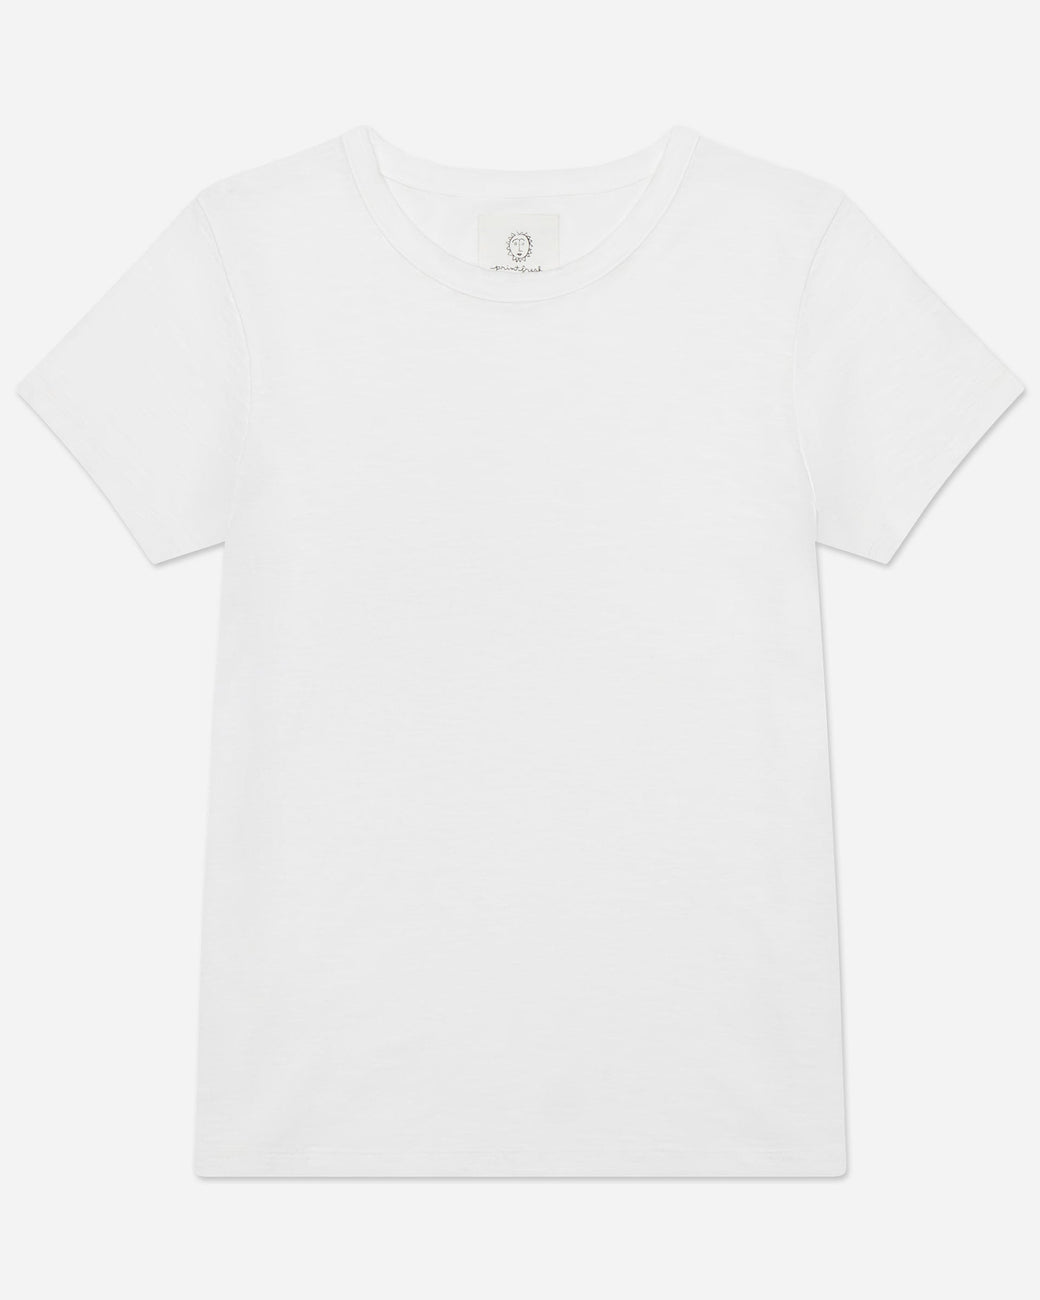 Saturday Tee - Knit T-Shirt - Cloud - Printfresh